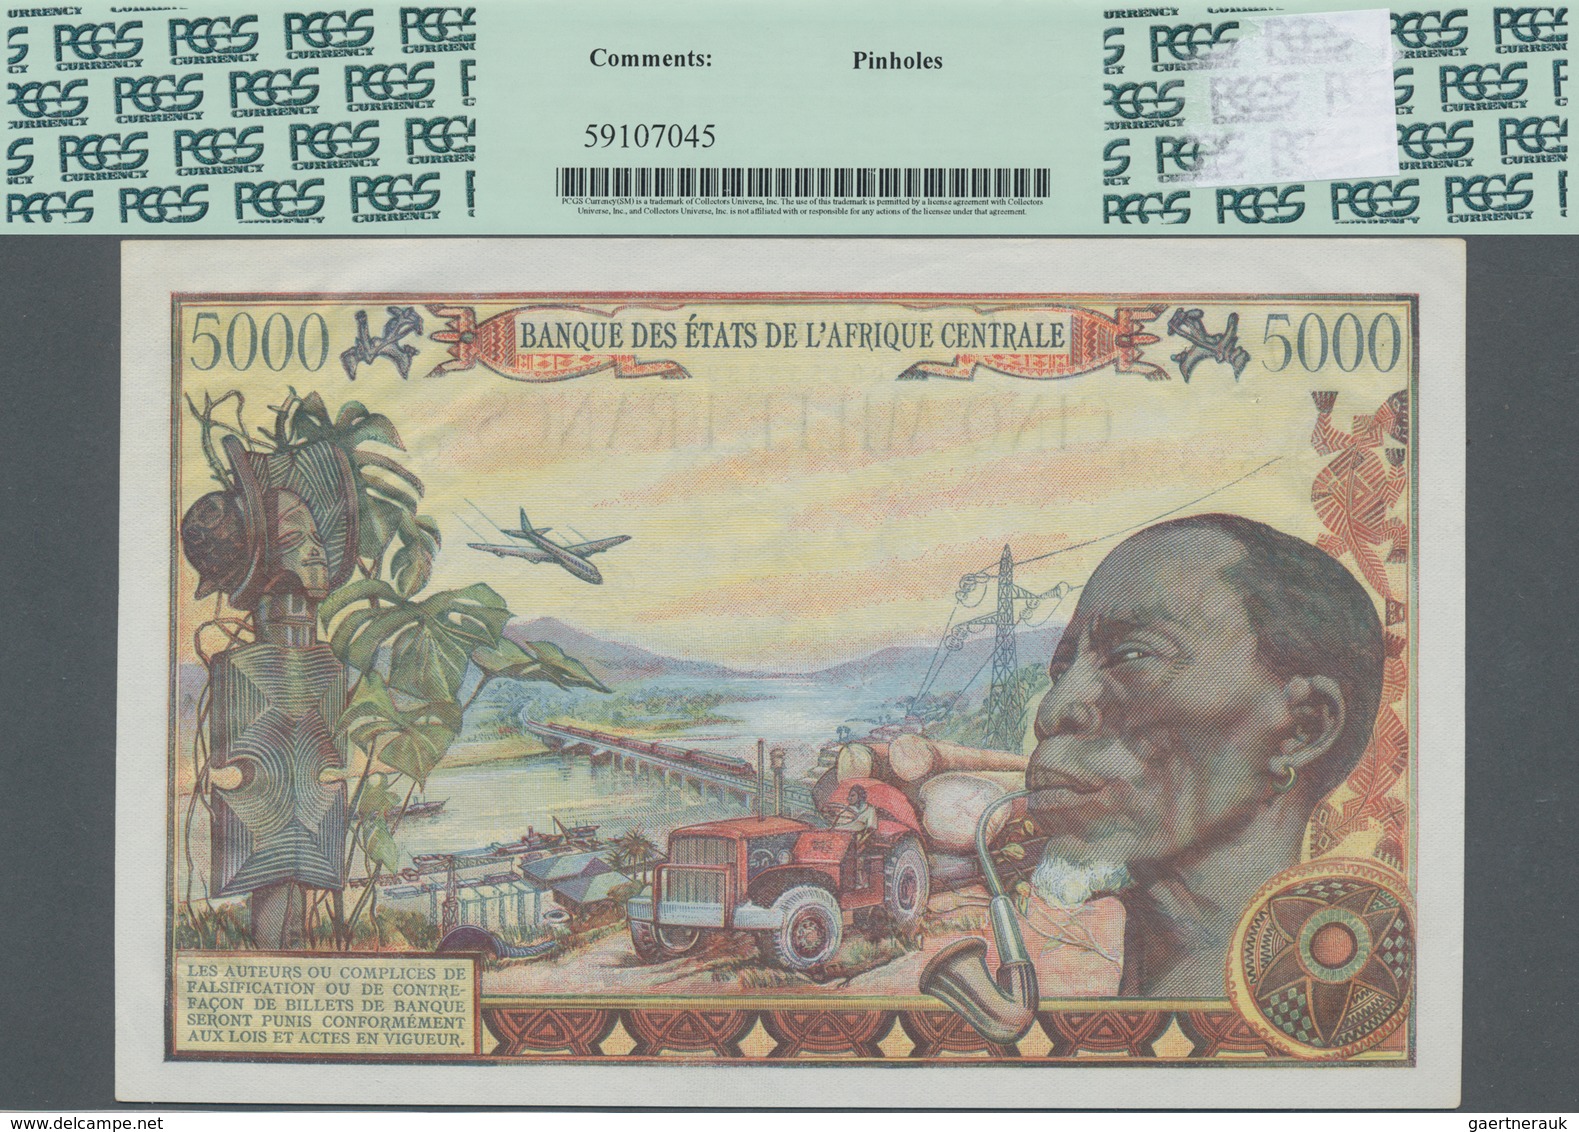 Chad / Tschad: Banque Des États De L'Afrique Centrale - République Du Tchad 5000 Francs 1980, P.8, G - Tchad